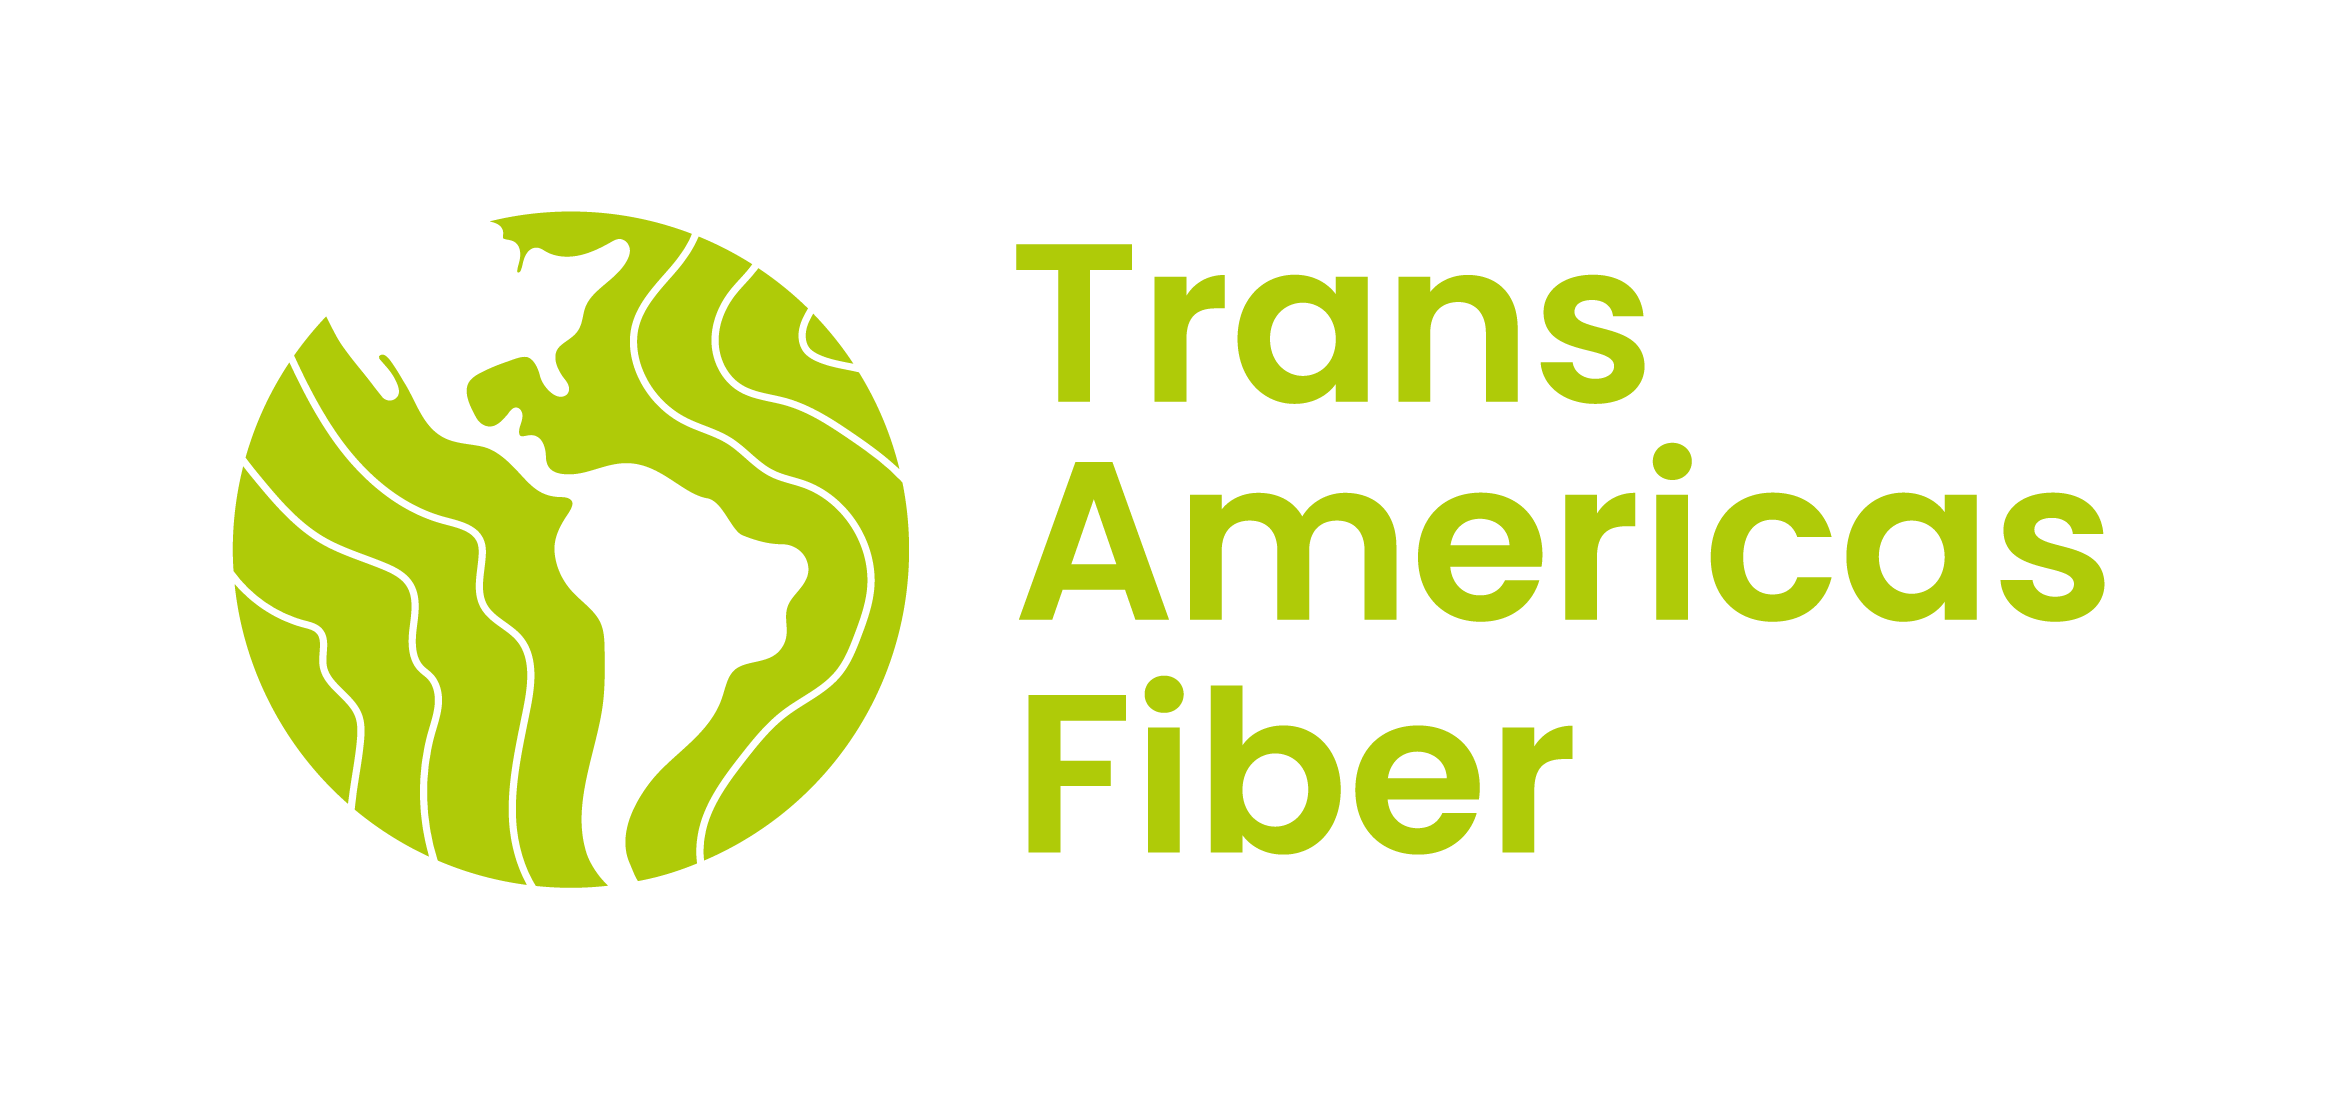 Trans Americas Fiber